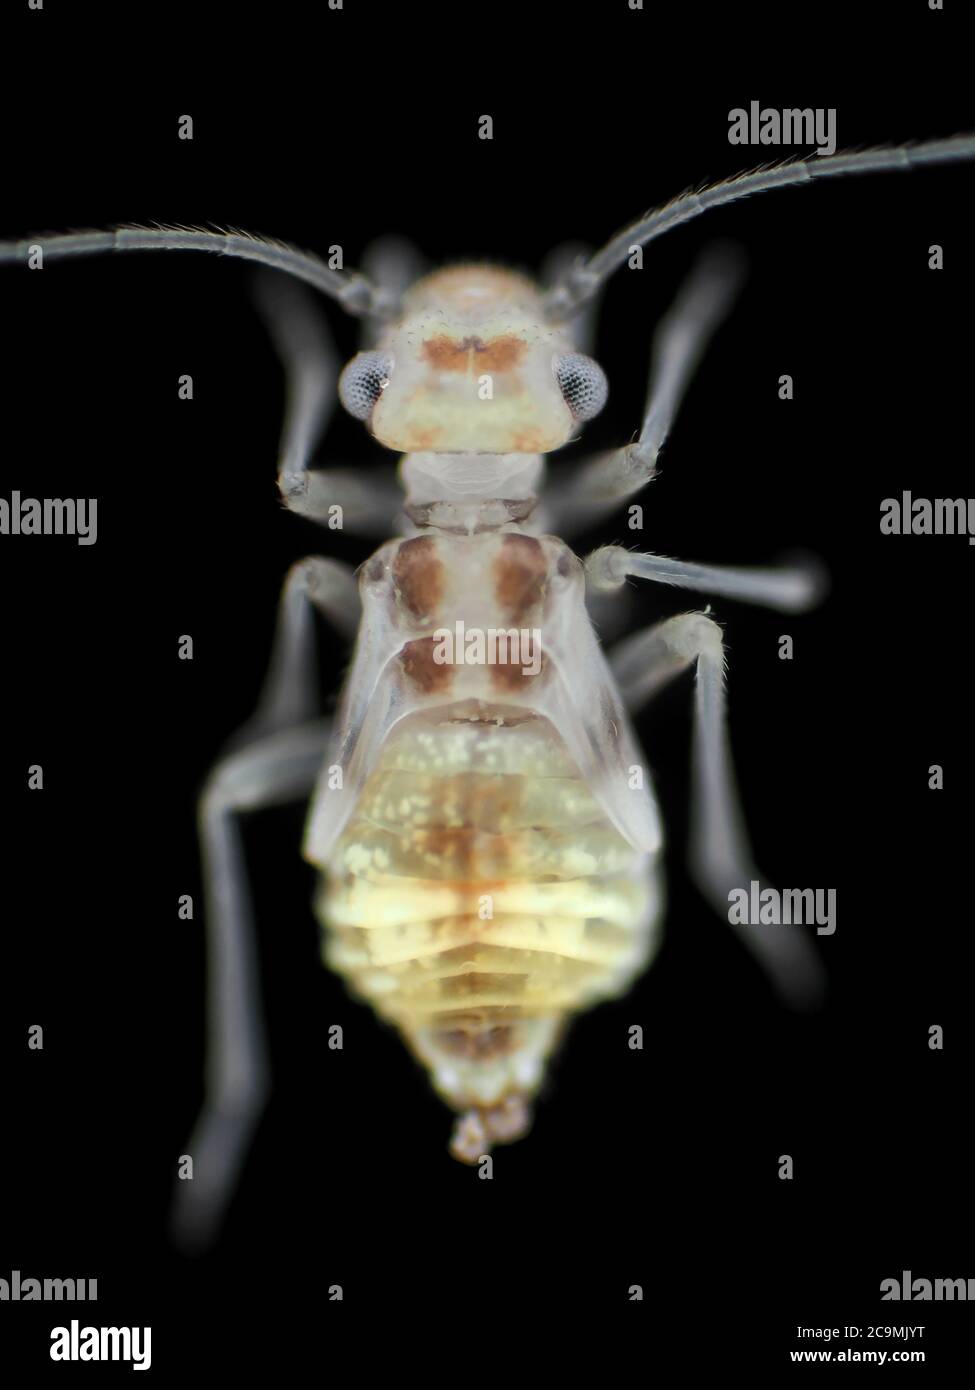 Le mouse immature (Psocidae), d'une longueur d'environ 2mm, sous le microscope Banque D'Images